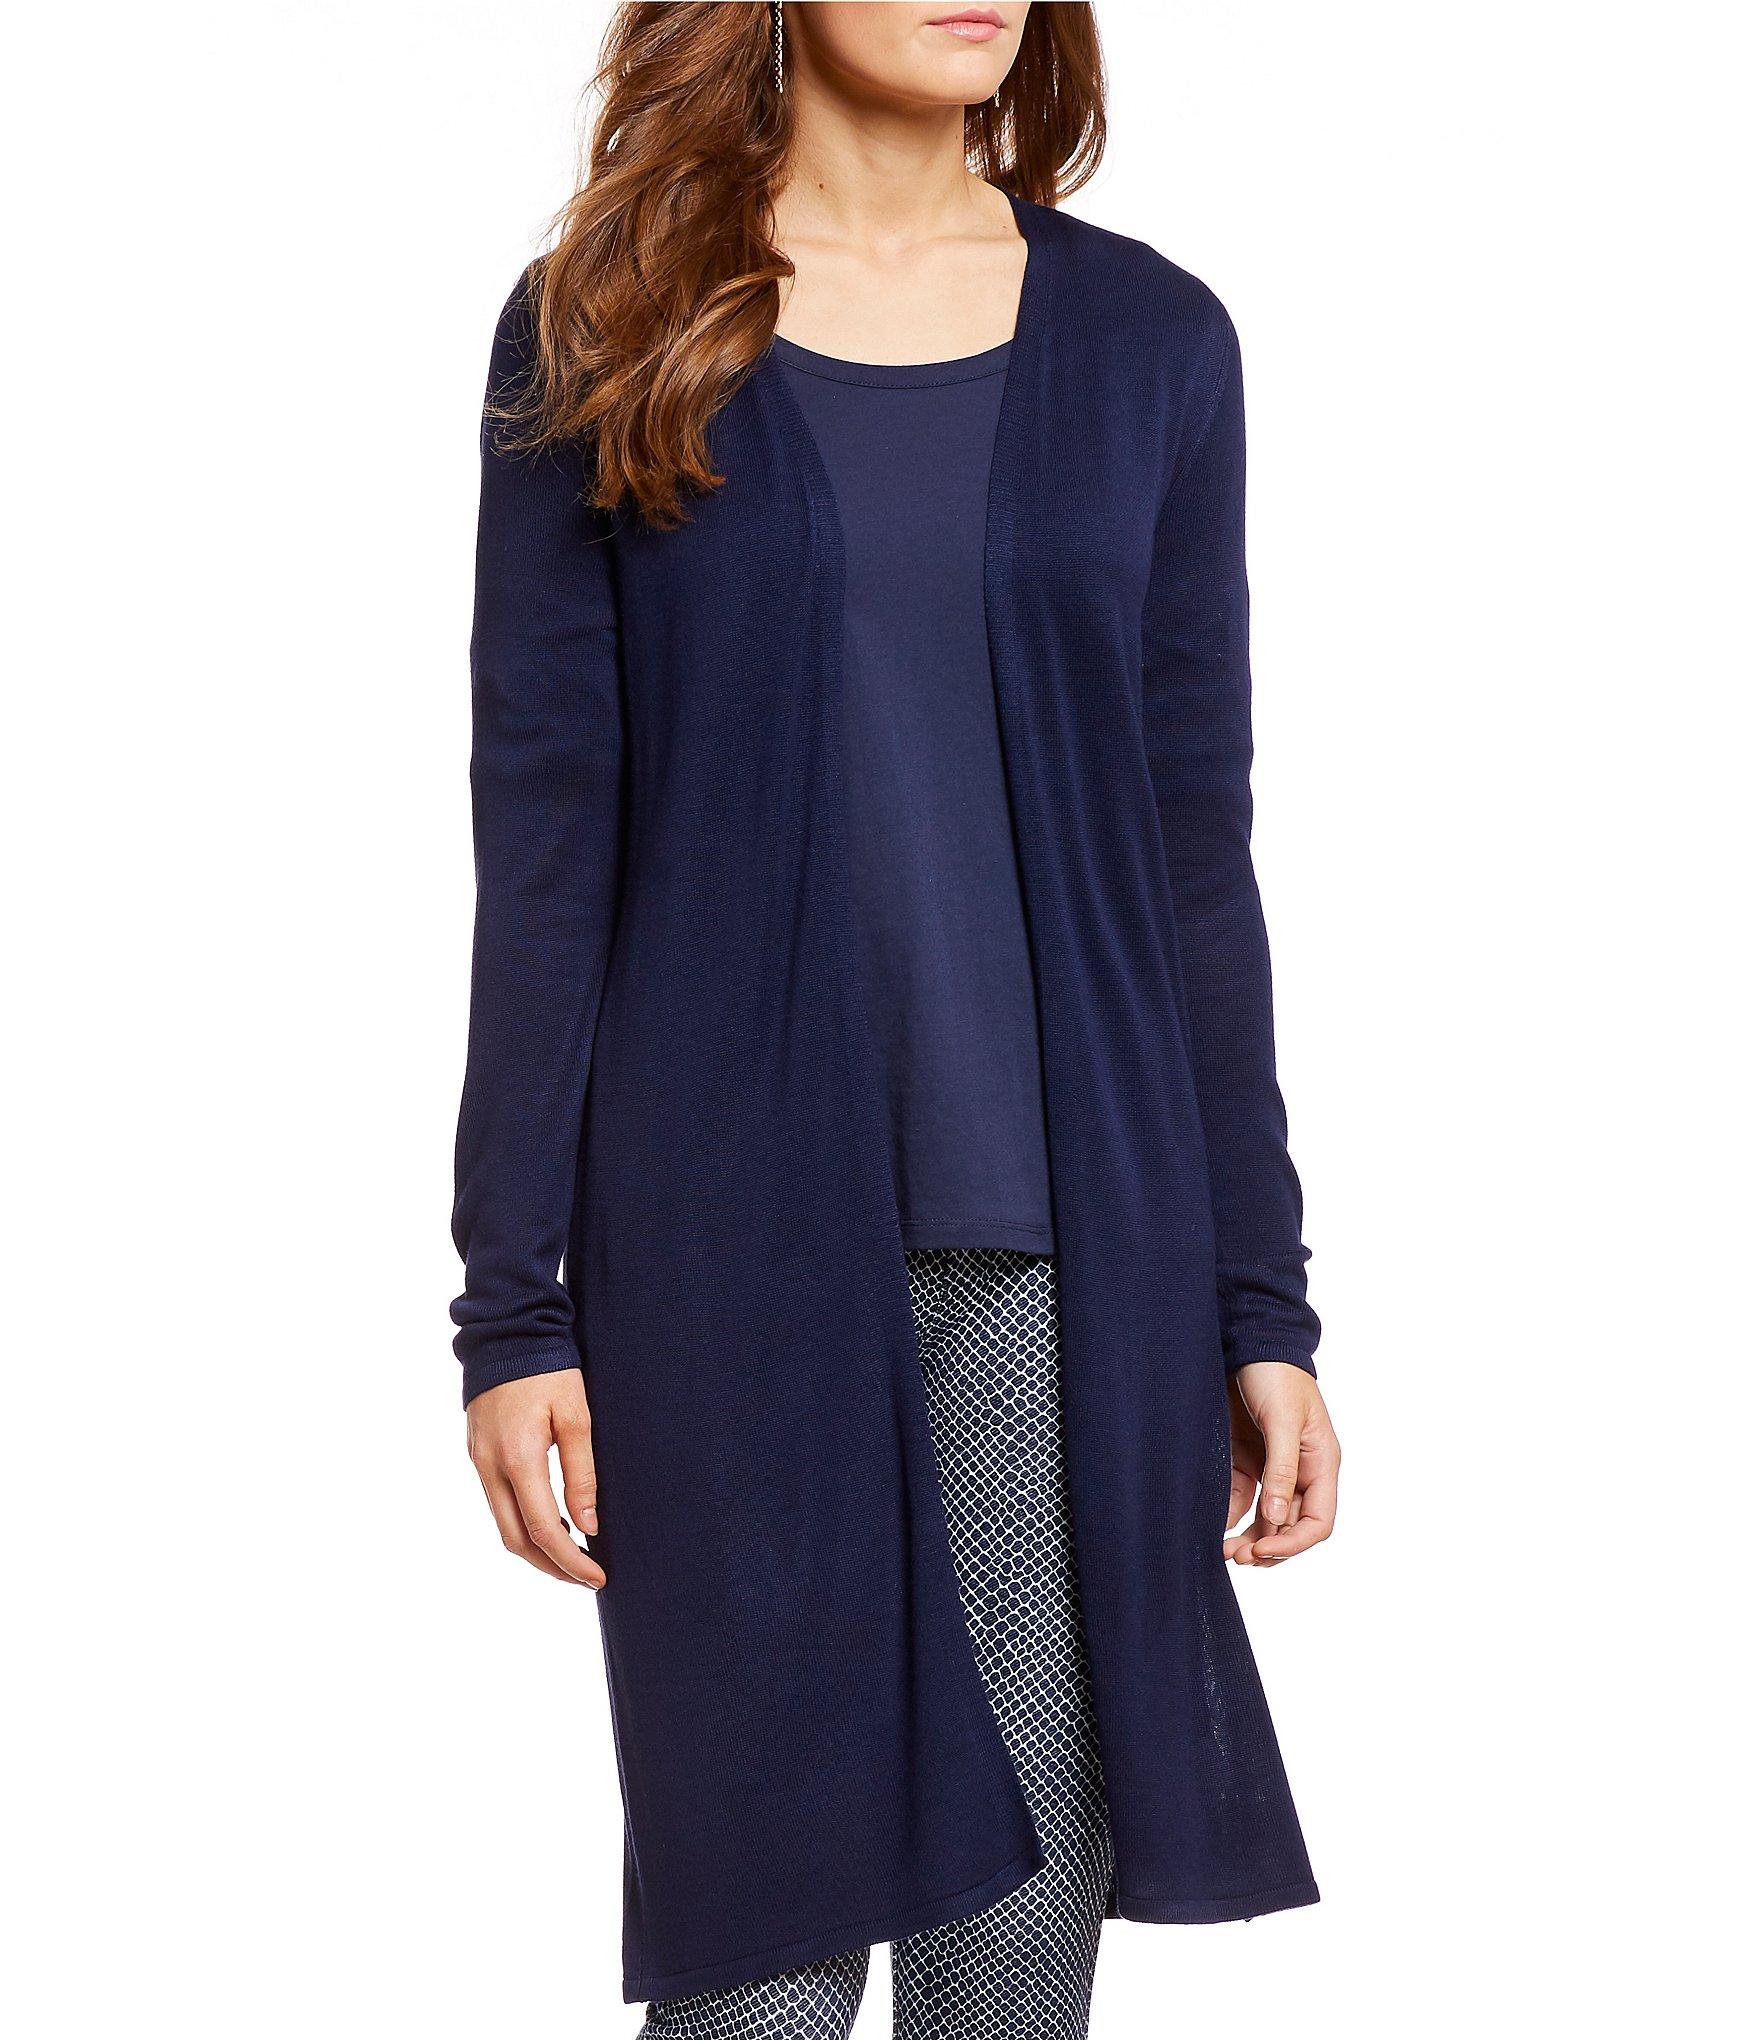 Michael Kors Fine Gauge Knit Dress Shirt - designedbybeckie